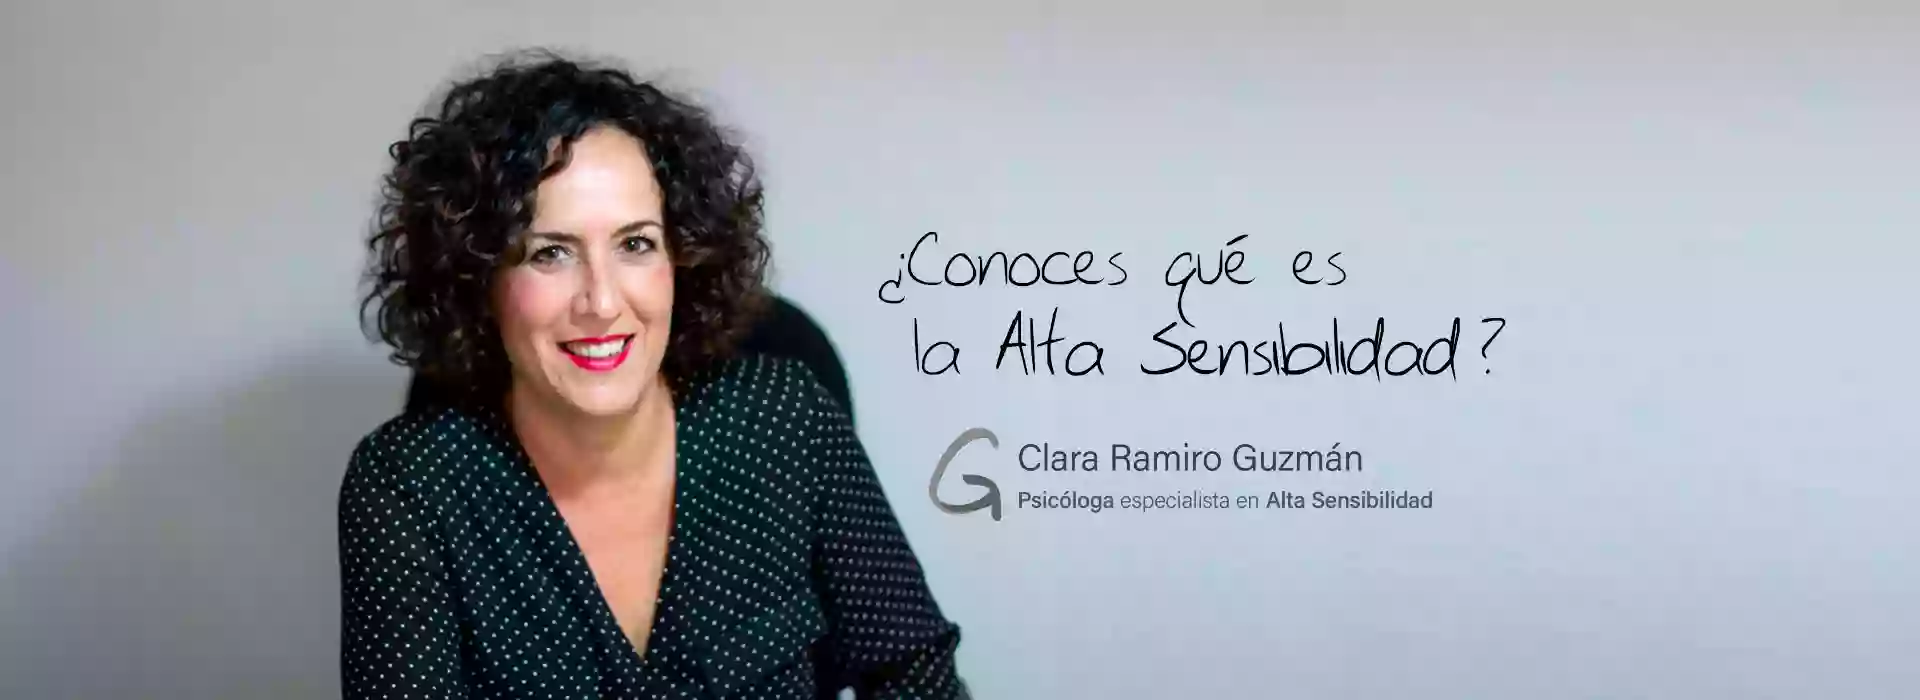 Clara Ramiro Guzmán